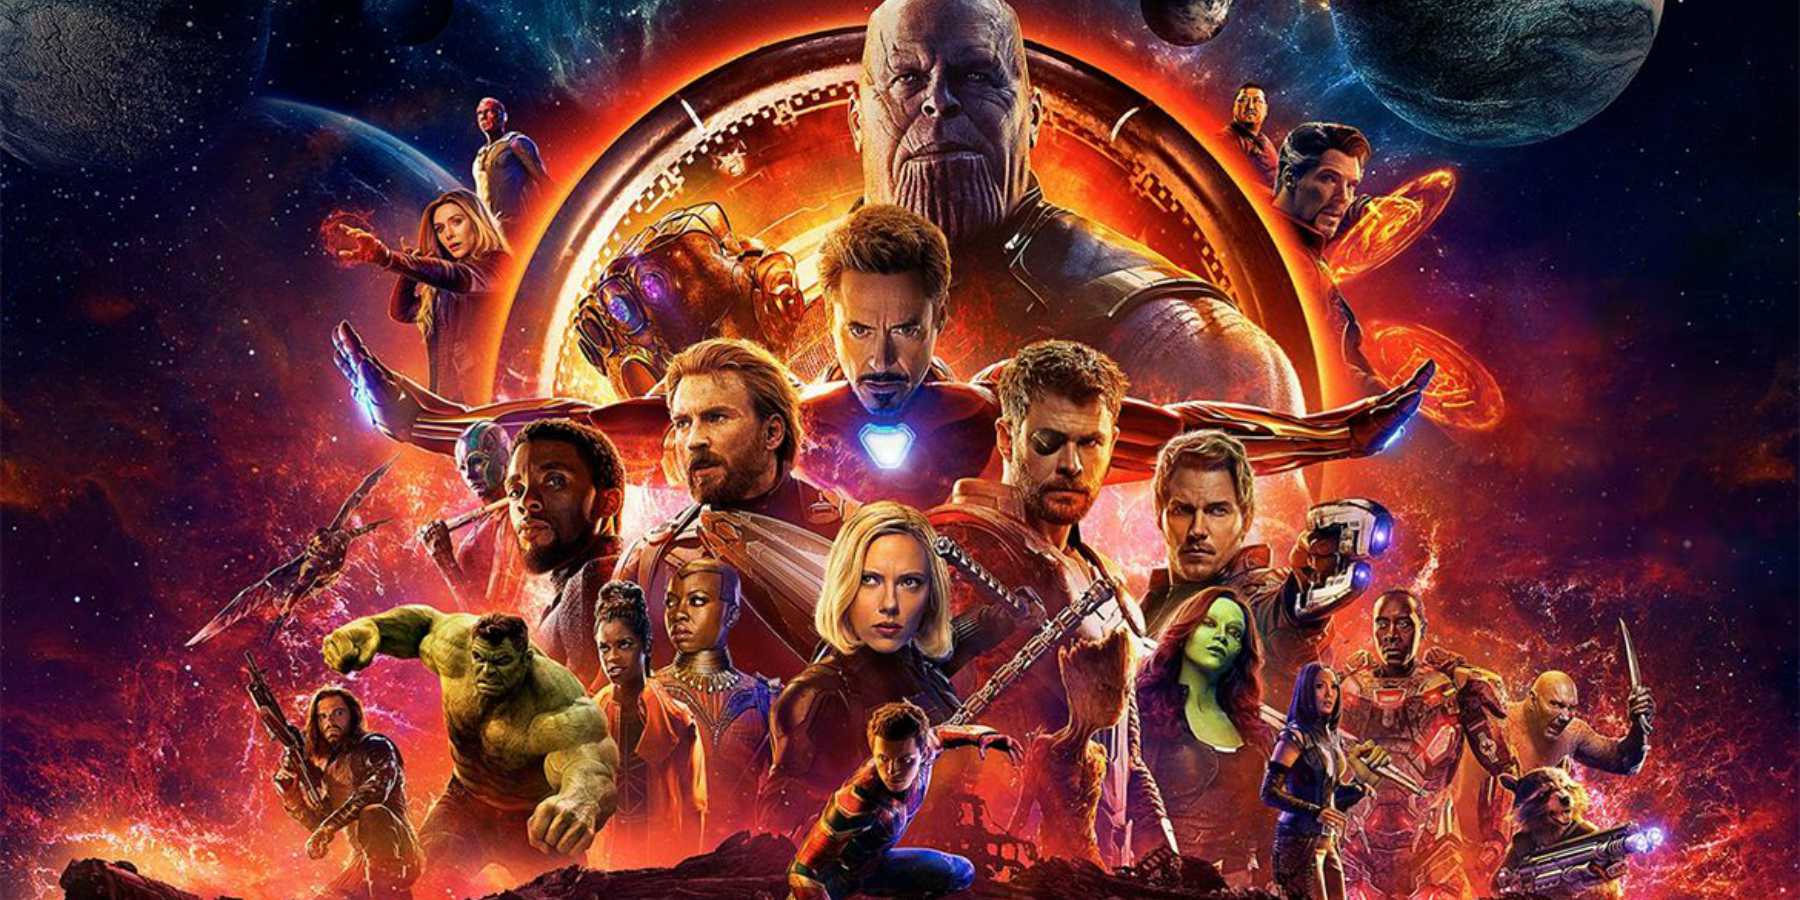 ¿Qué personaje tendrá más tiempo en pantalla en Avengers Infinity War?